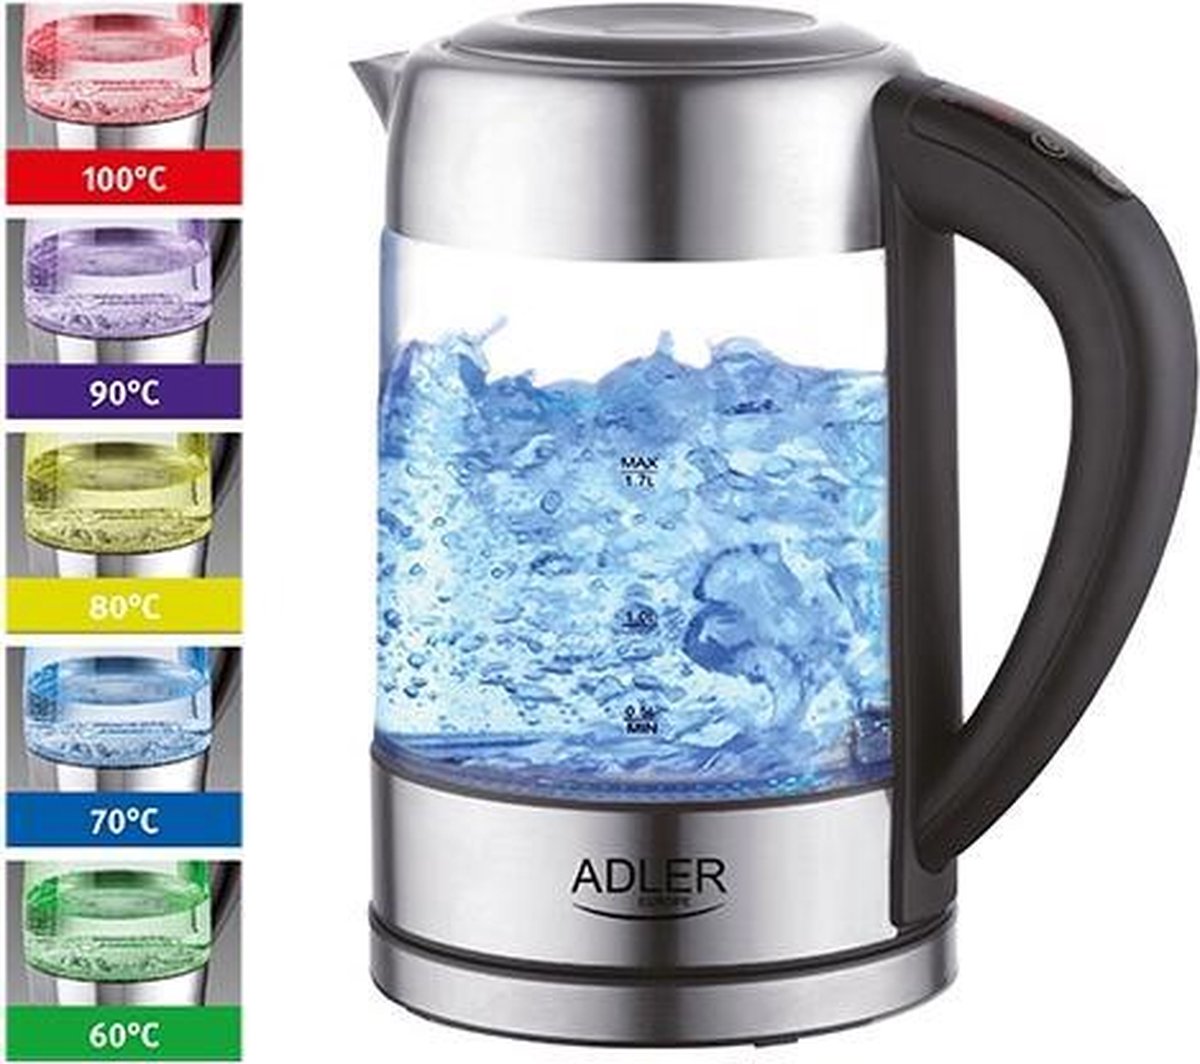 Top Choice - Waterkoker met temperatuur controle - 60-100 graden - 1.7 liter - verschillende kleuren led